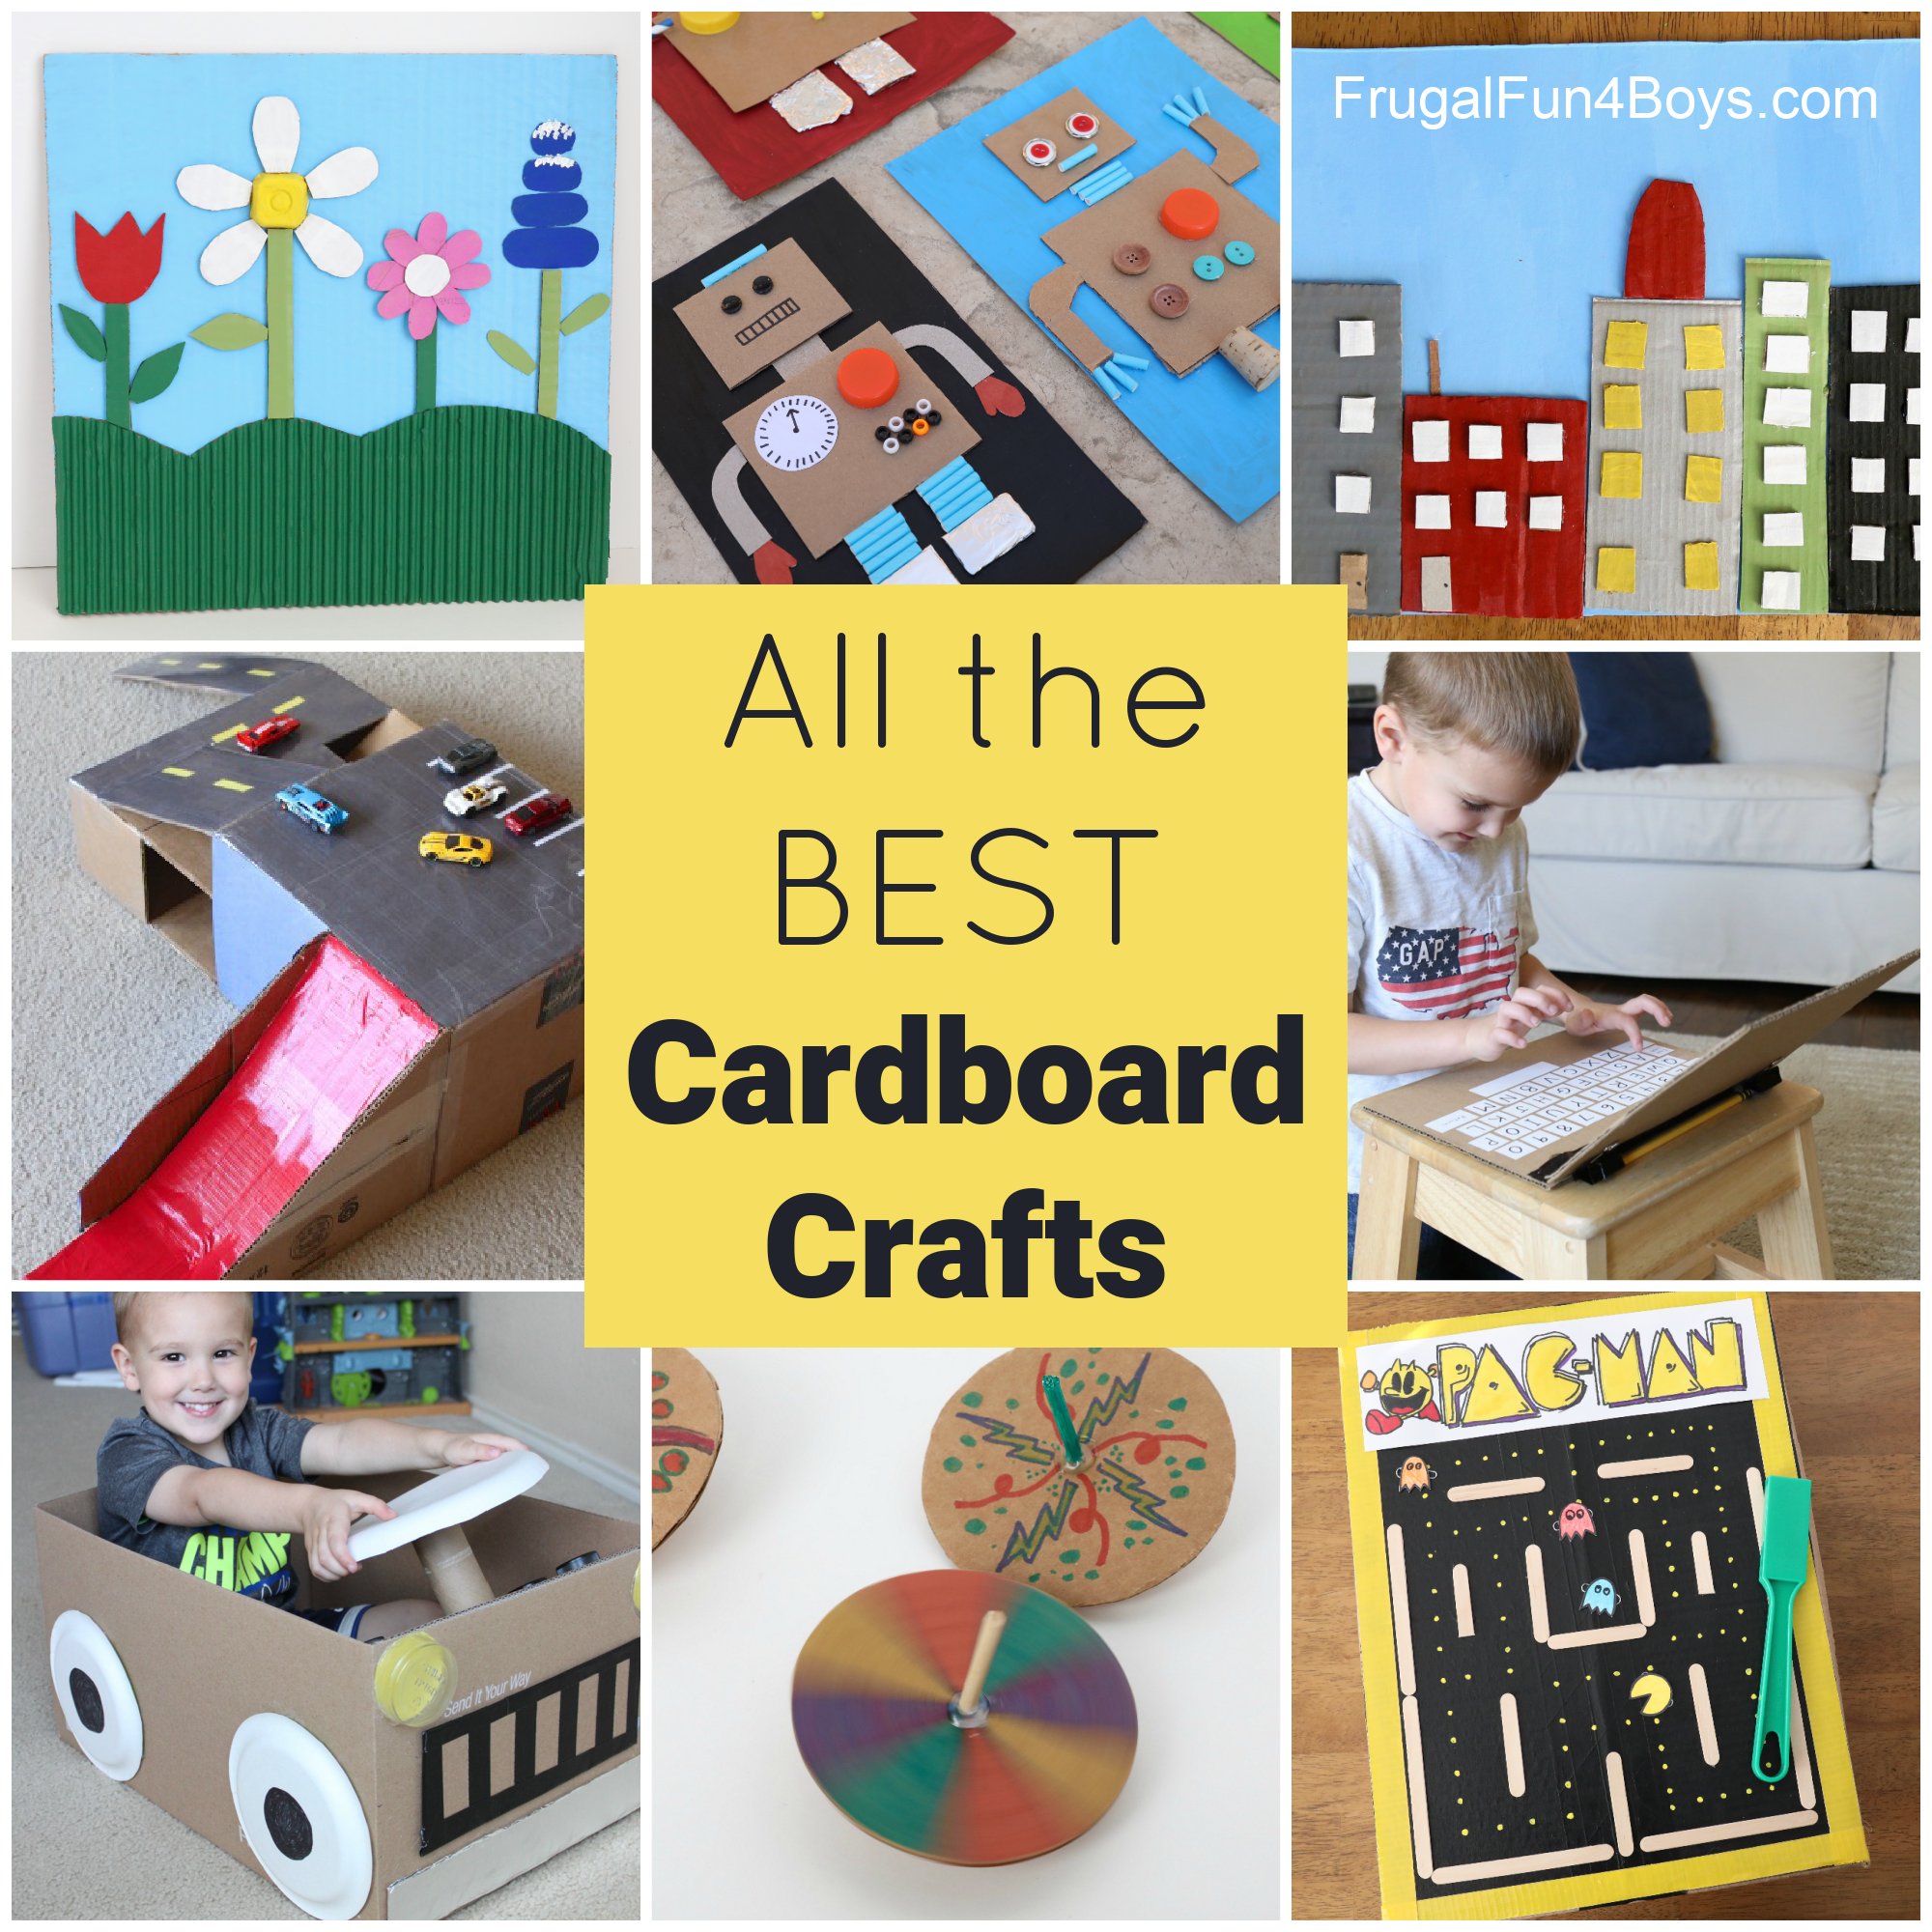 Cardboard crafts for kids